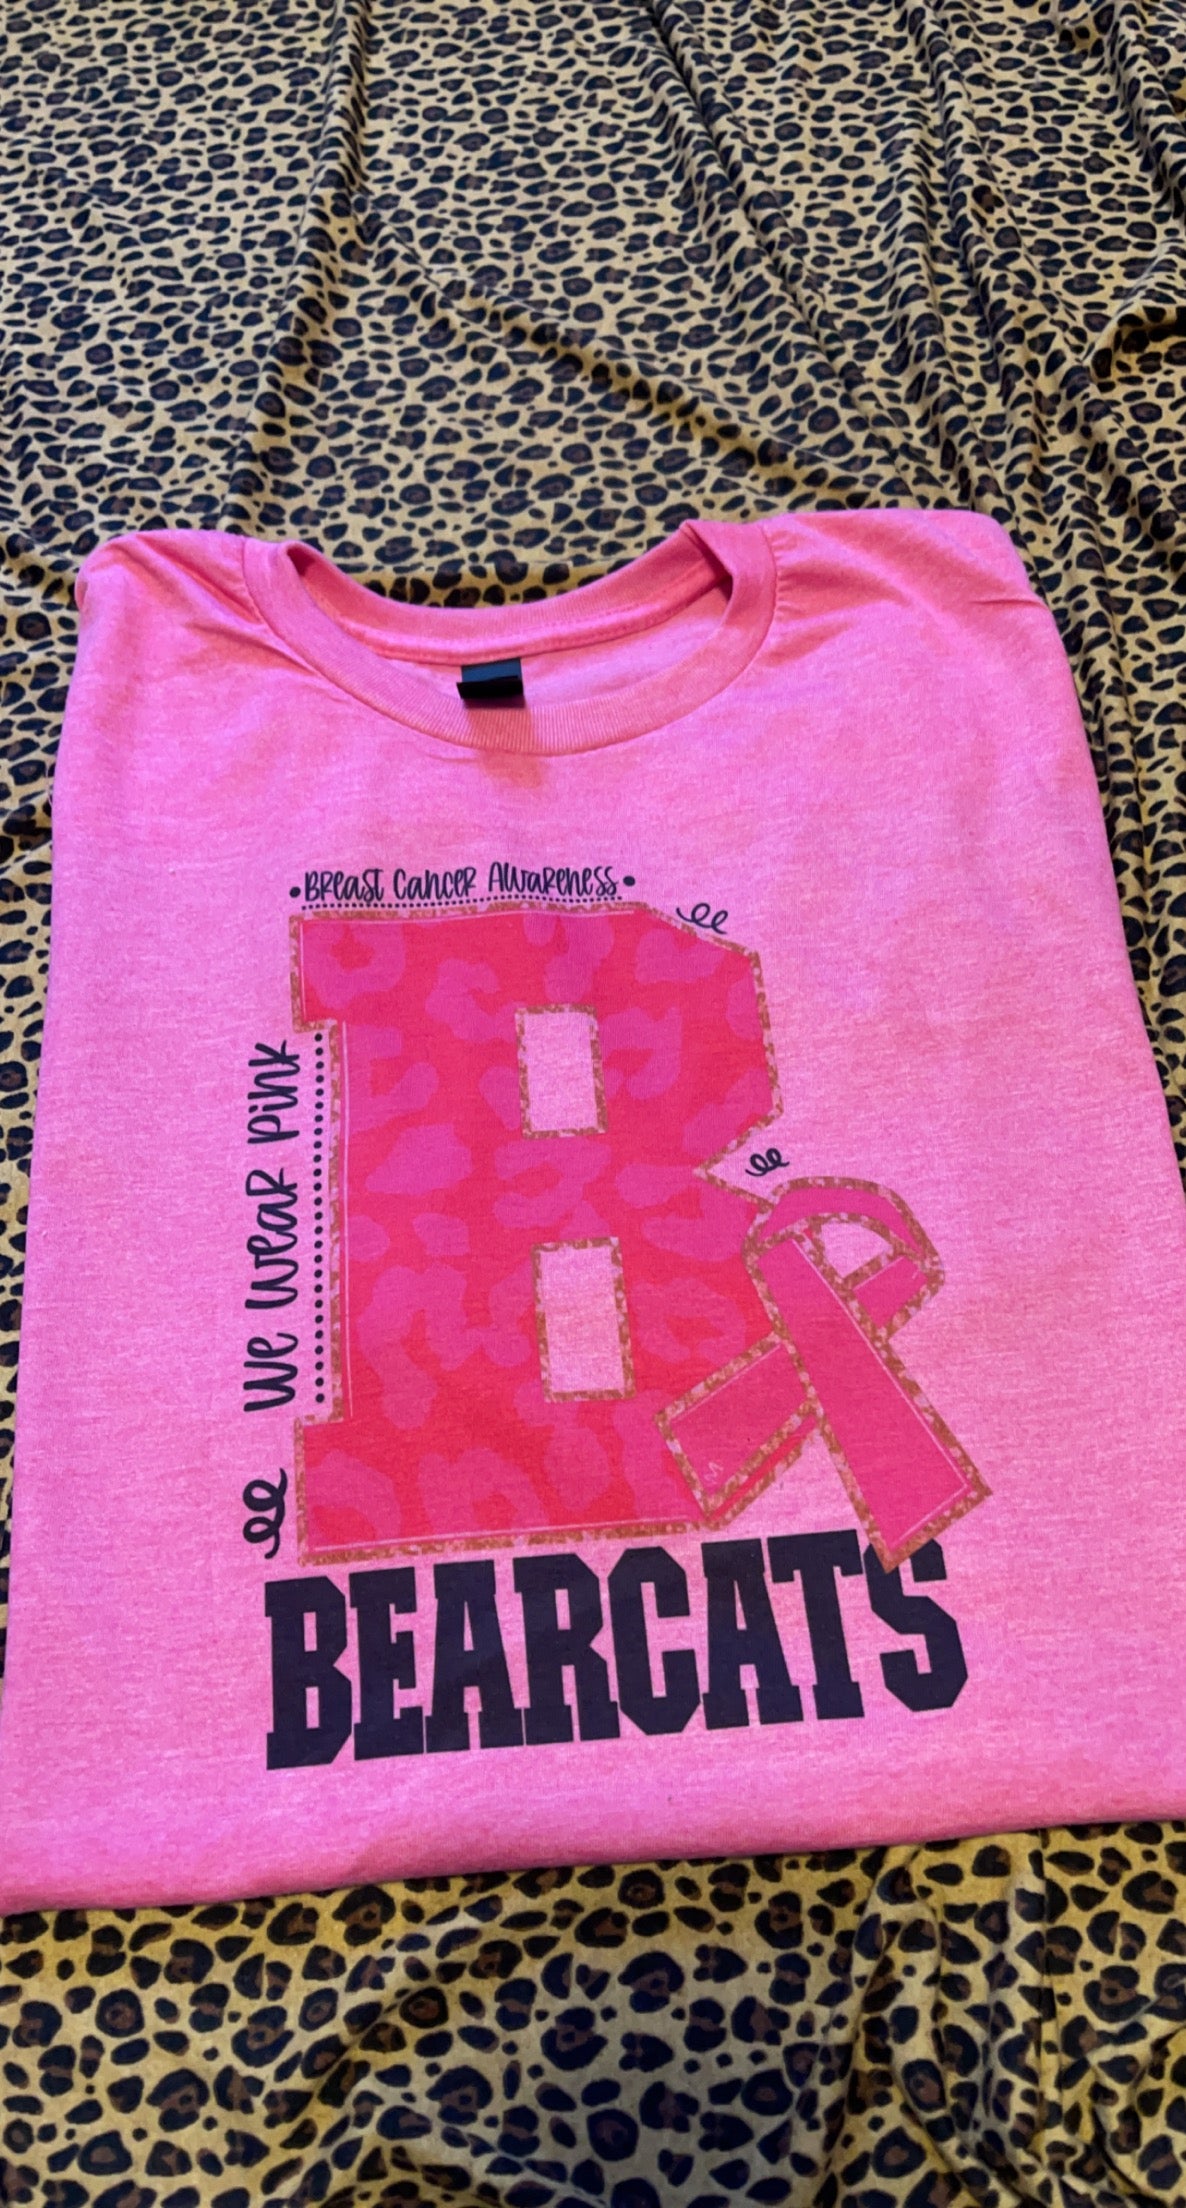 Bearcats Pink out October shirt